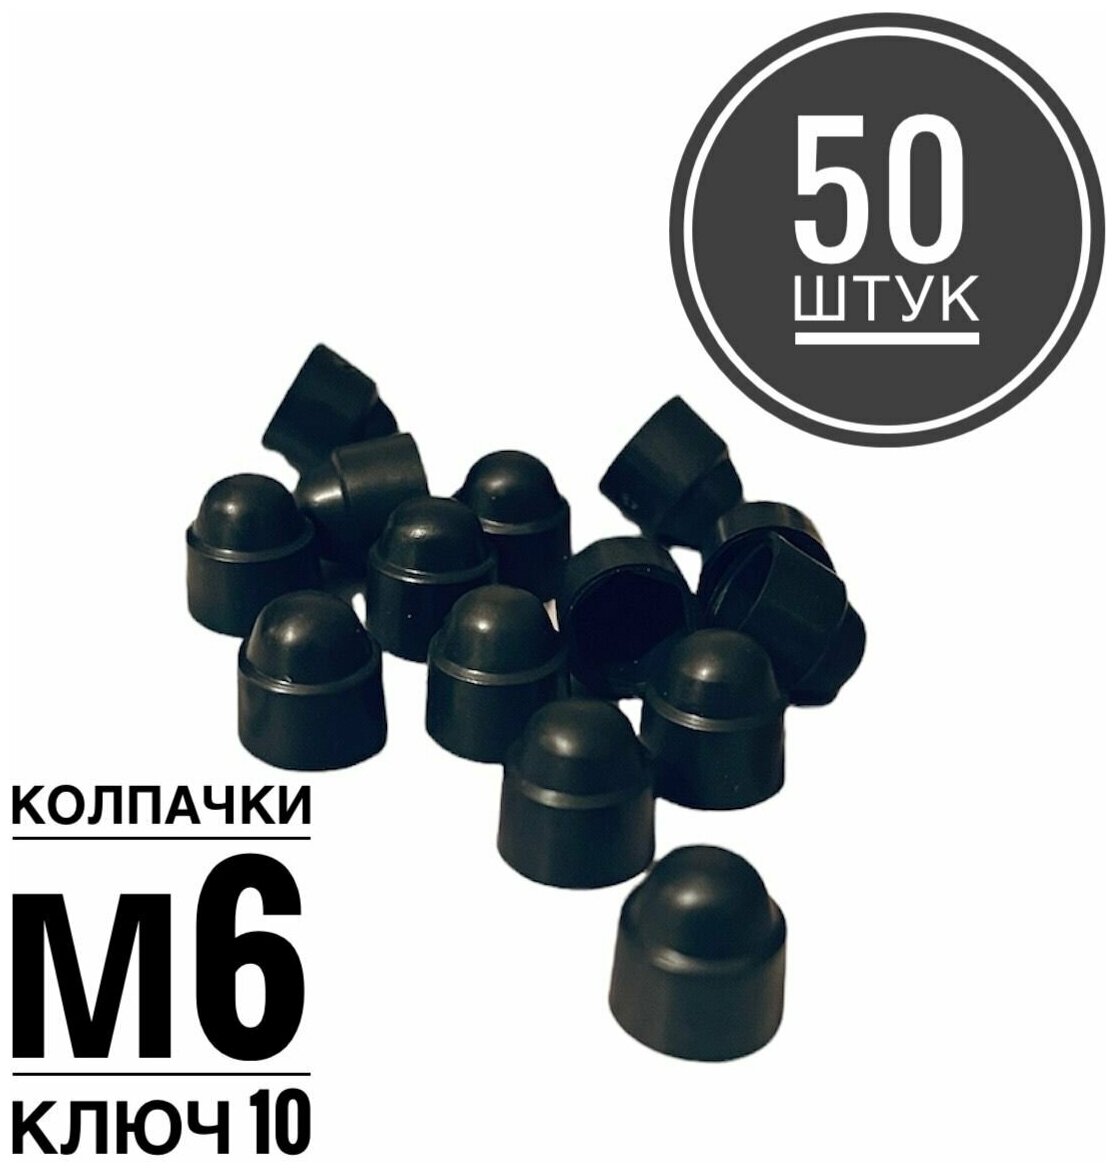 Колпачок М6 на гайку/болт пластиковый декоративный под ключ 10 (50 штук)